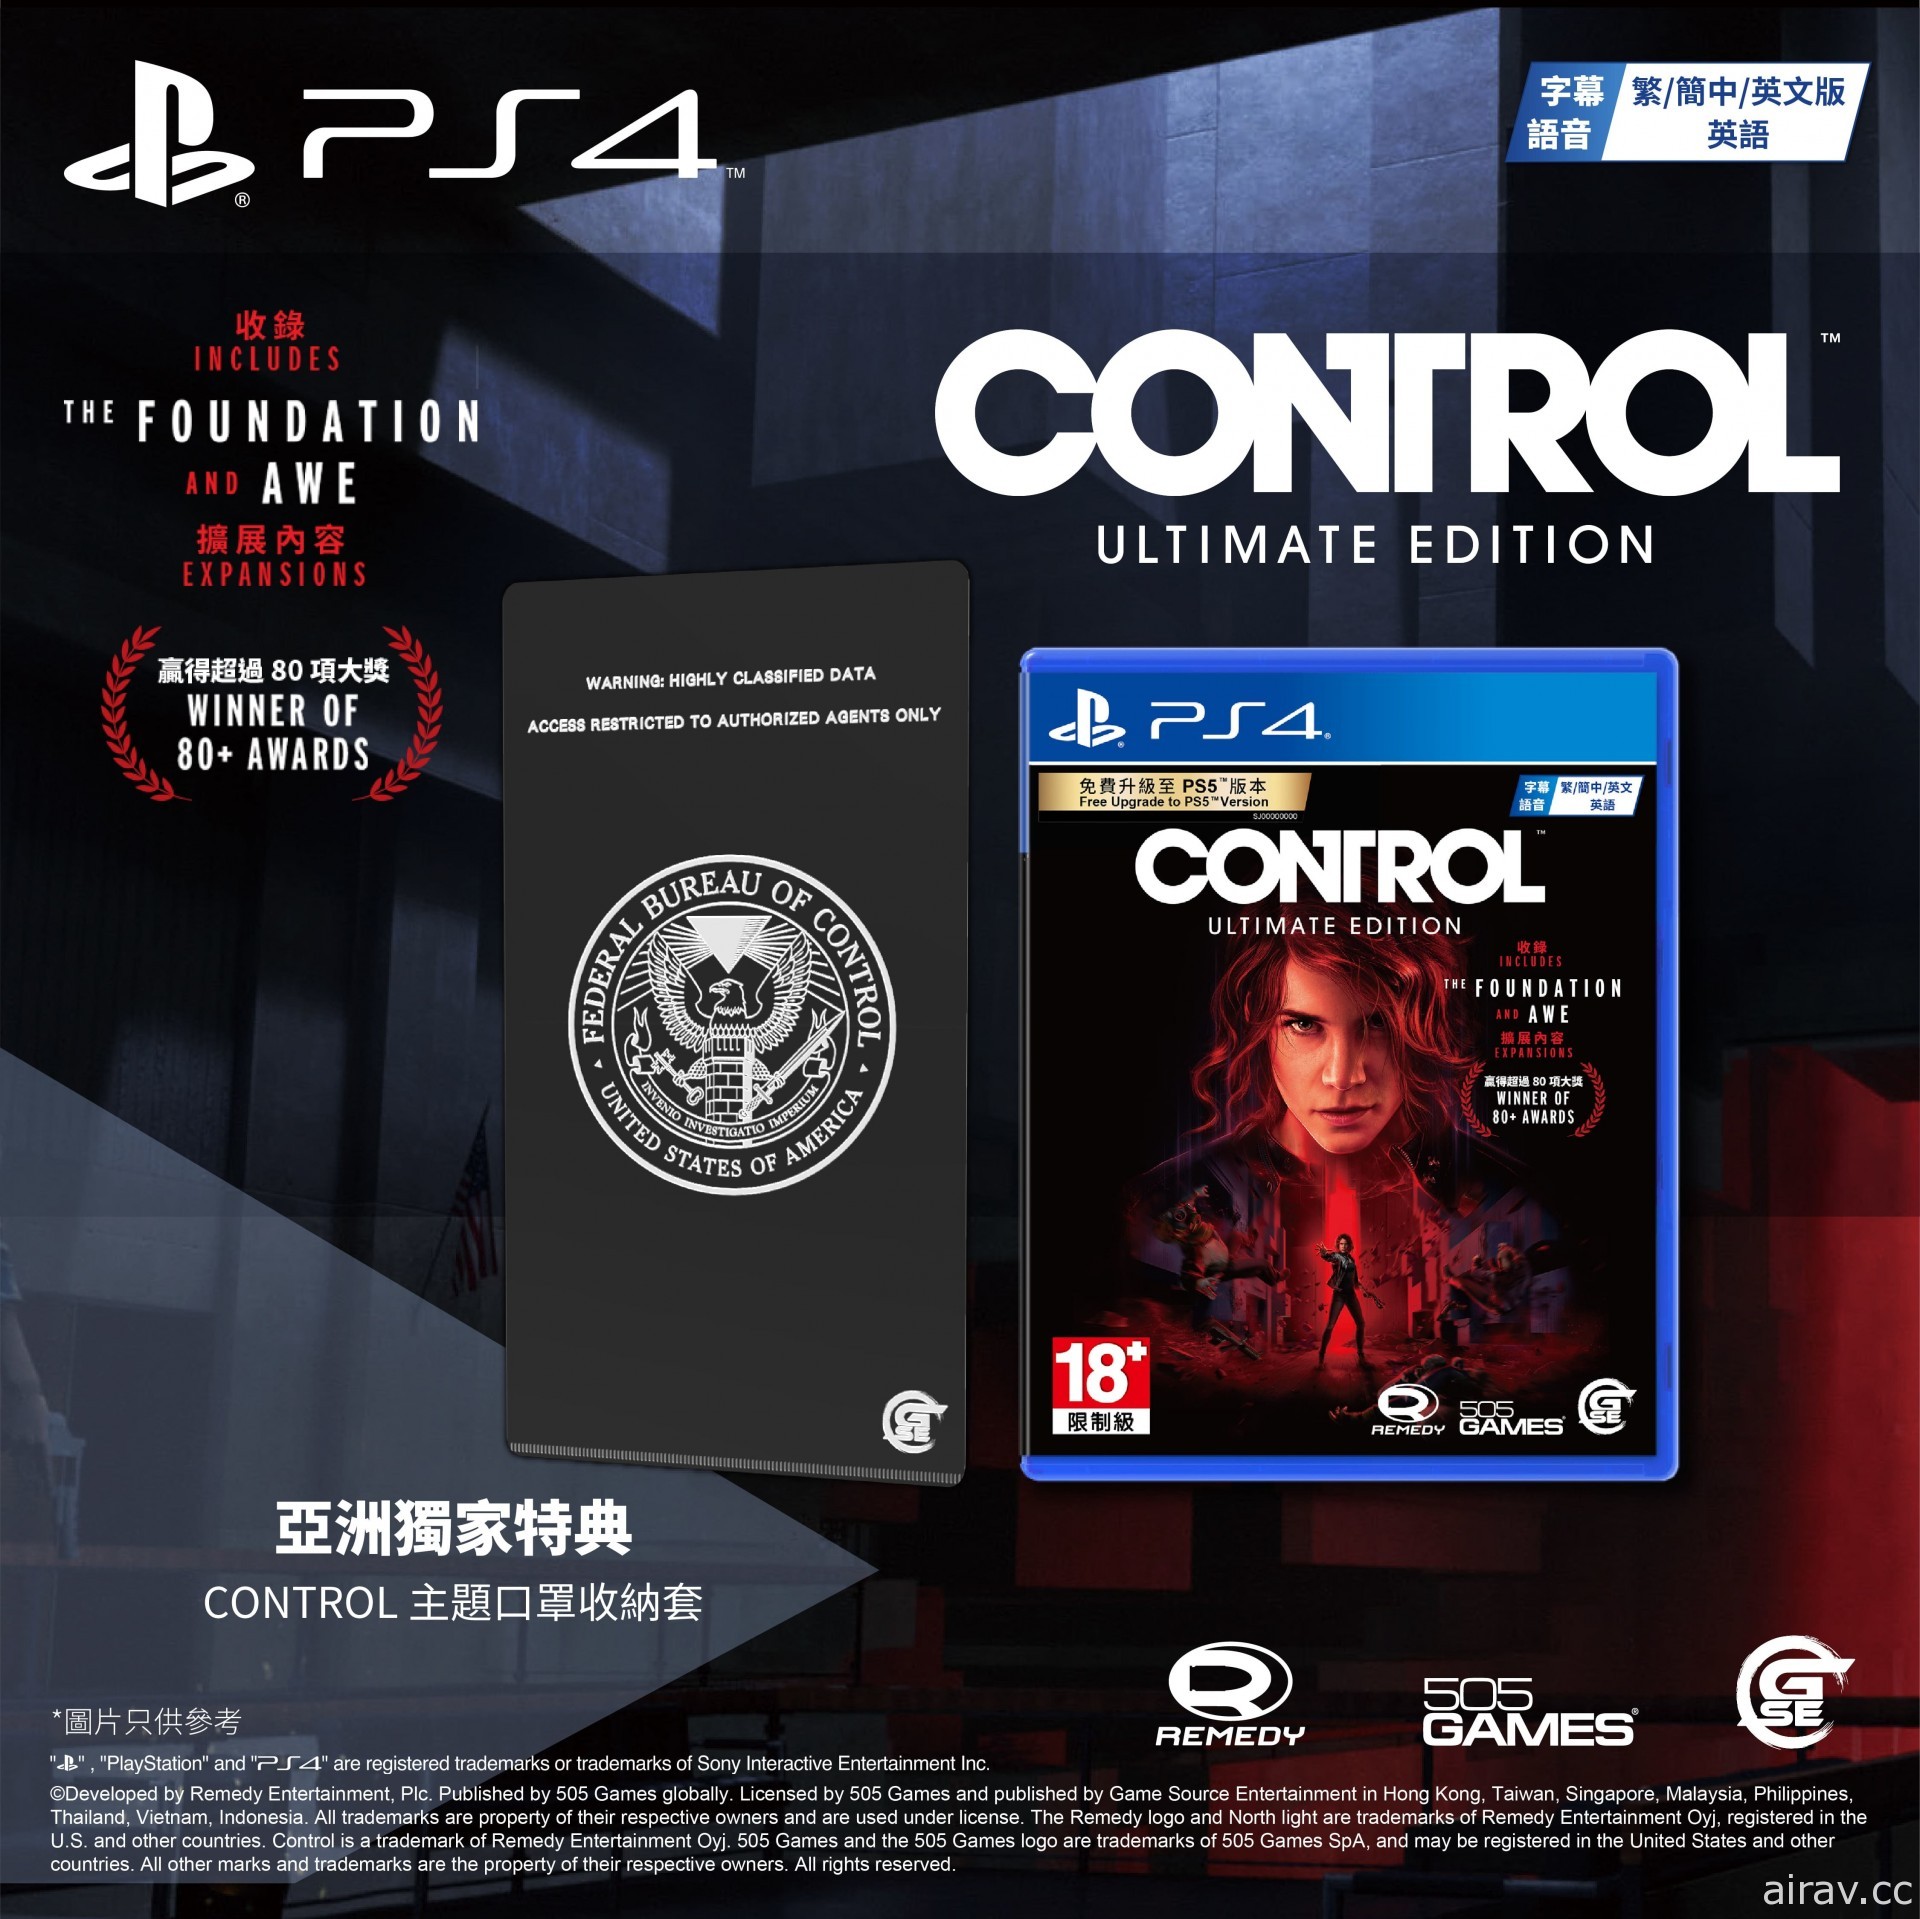 《控制 CONTROL 終極版》即將推出亞洲完全數量限定版